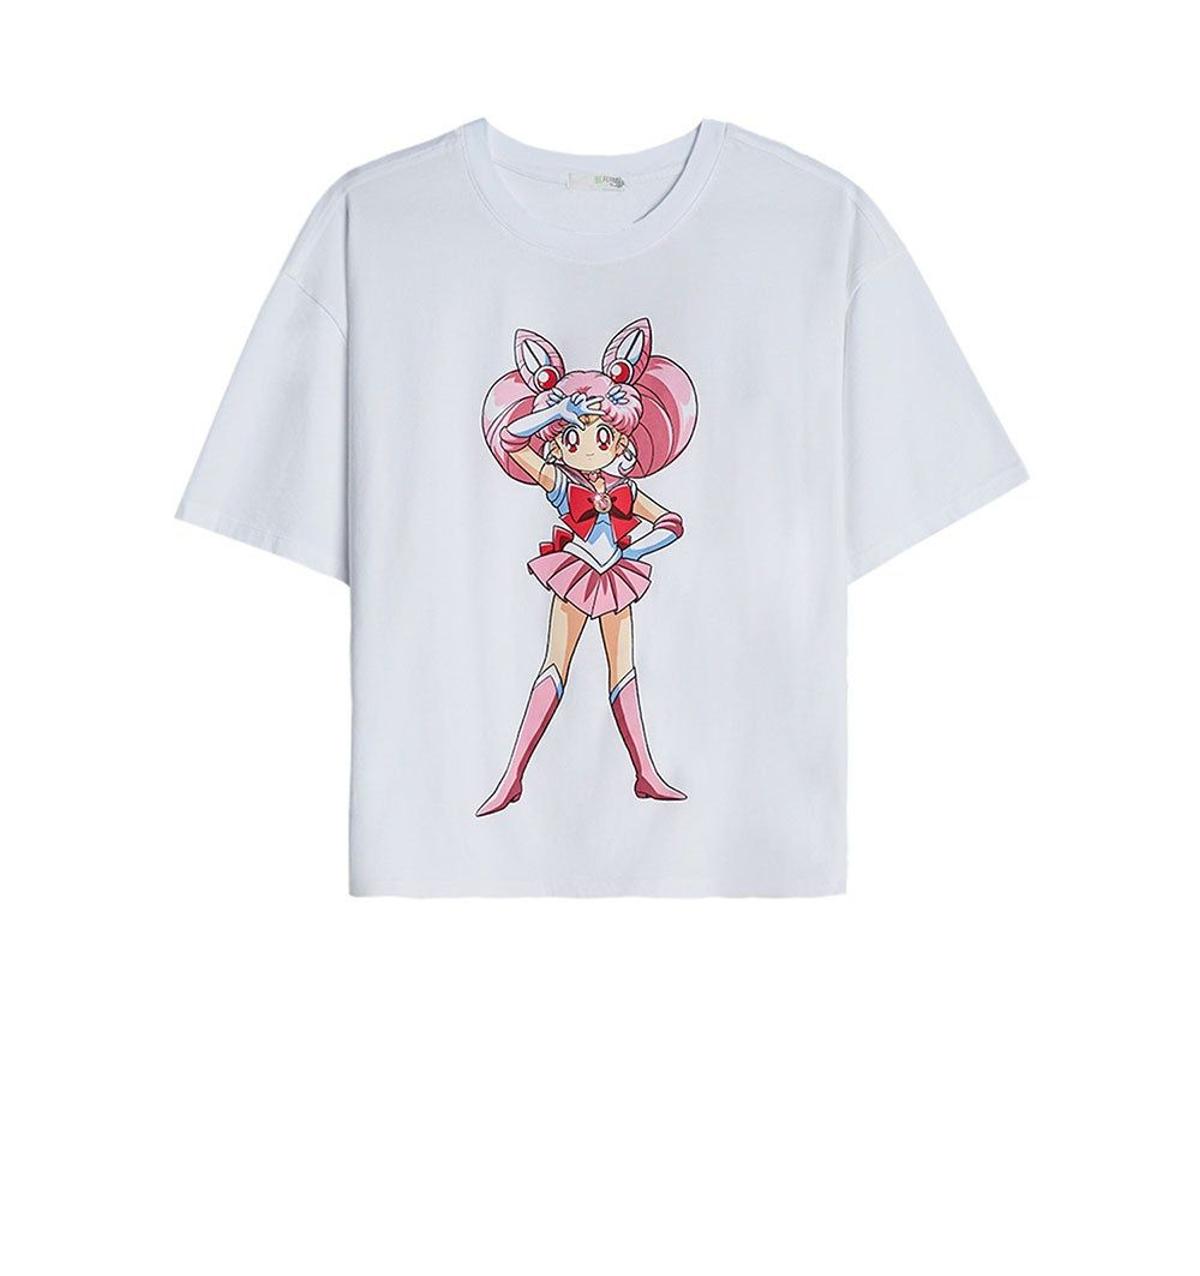 Flipa con la colección de Sailor Moon x Bershka - Cuore